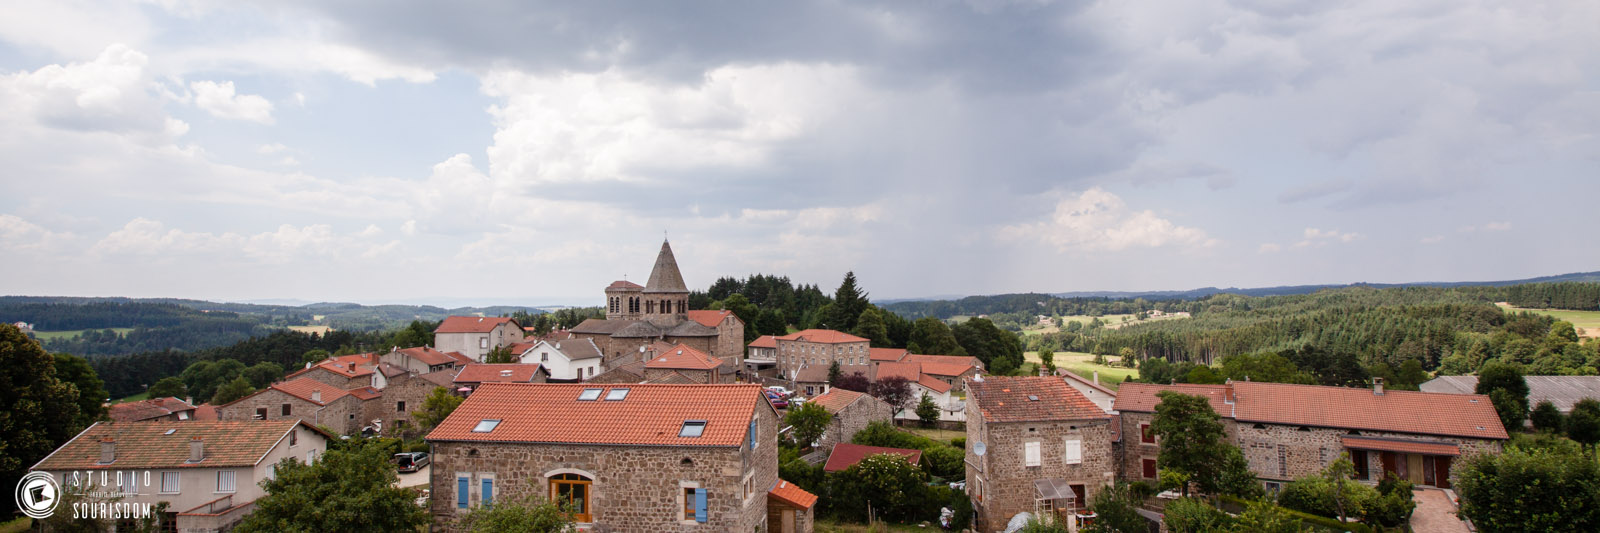 Village de Raucoules